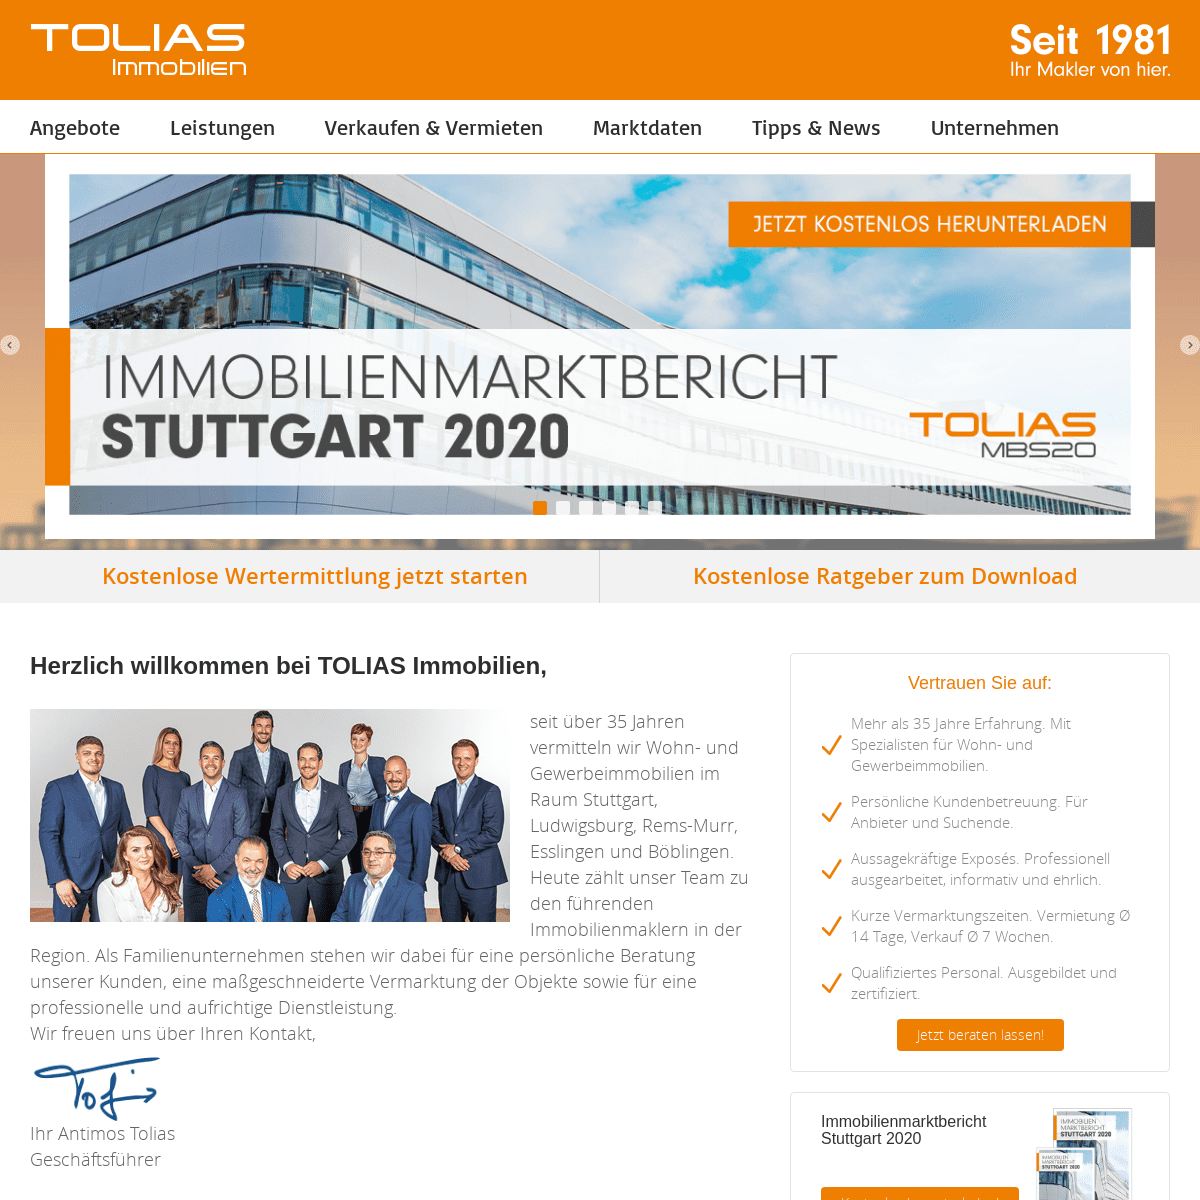 A complete backup of tolias-immobilien.de